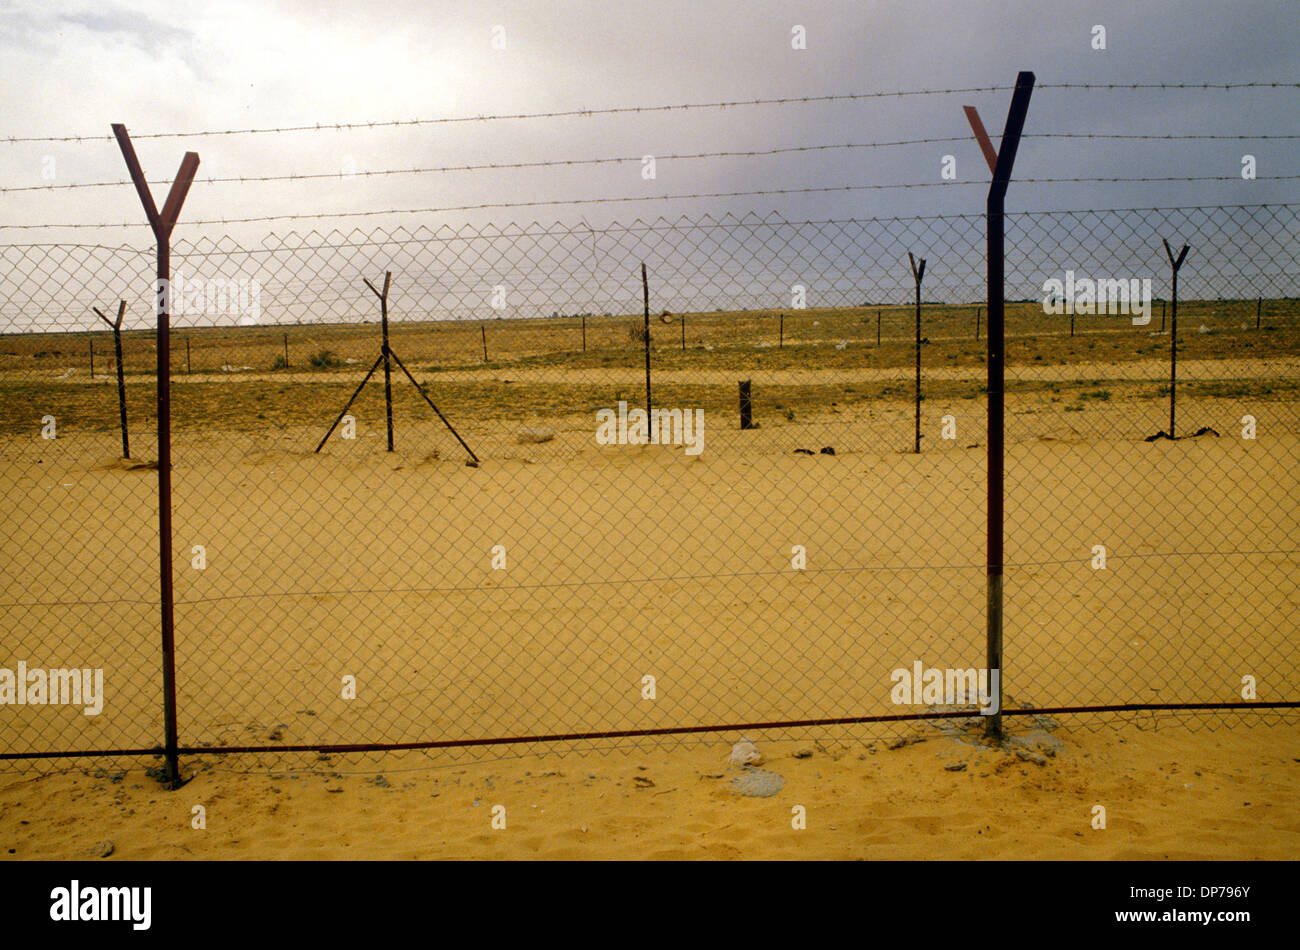 Deserto del Sinai vicino a Rafah, palestinese, Striscia di Gaza aprile 1982. Quando Israele si ritirò dal Sinai nel 1982, come parte dei termini del trattato di pace Egitto-Israele del 1979. Rafah fu divisa in una parte di Gazan e una parte egiziana, dividendo le famiglie, separate da barriere di filo spinato. 1980 HOMER SYKES Foto Stock